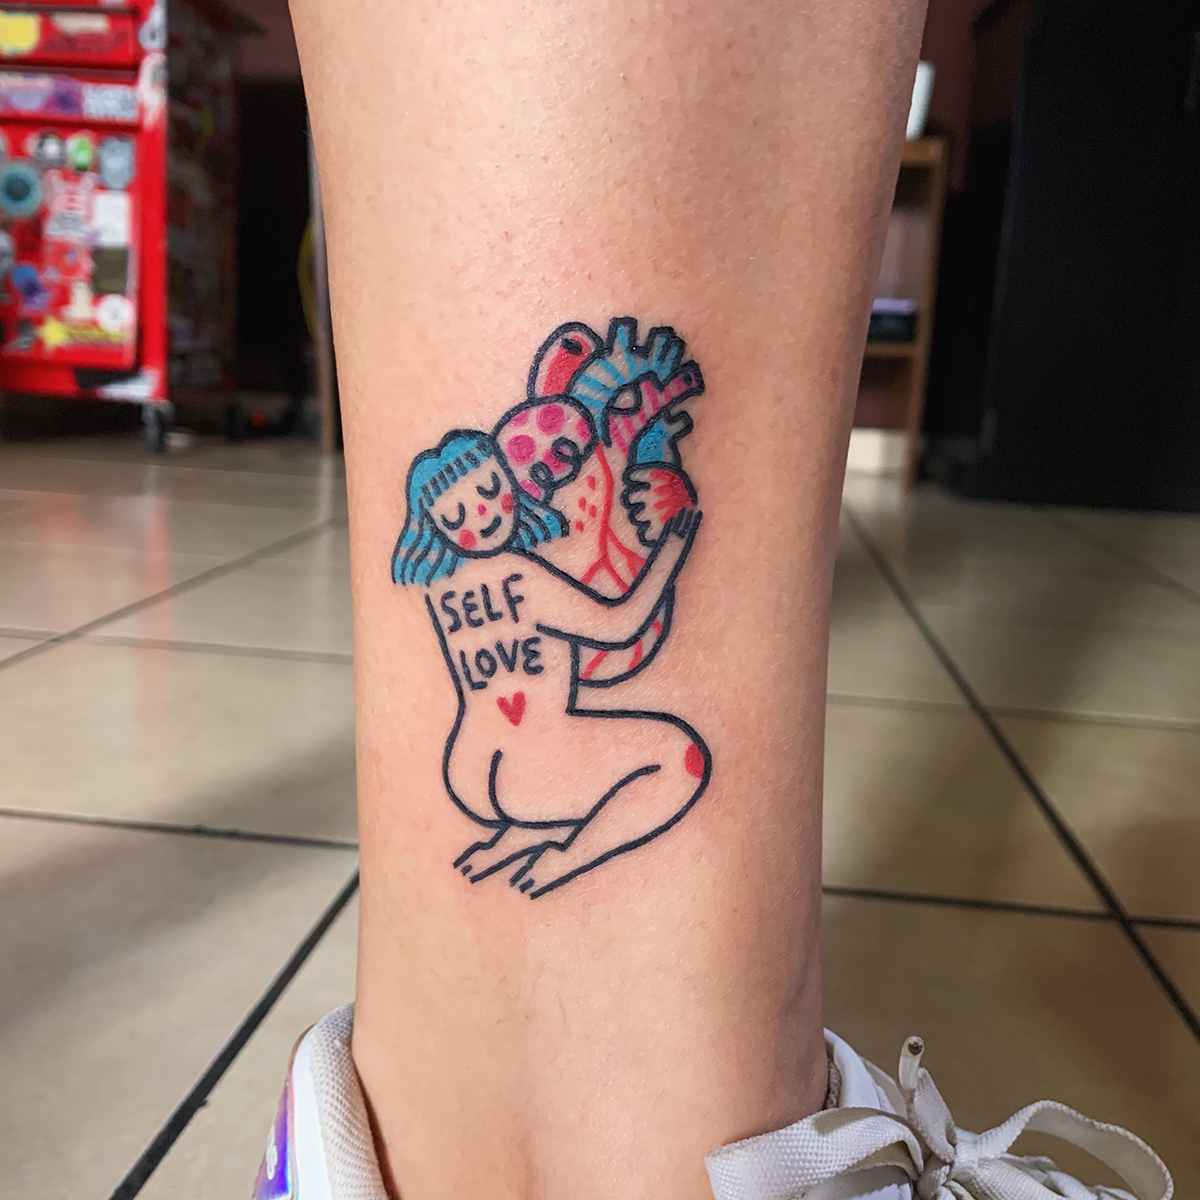 El Salvador tattoo self love feminism floral